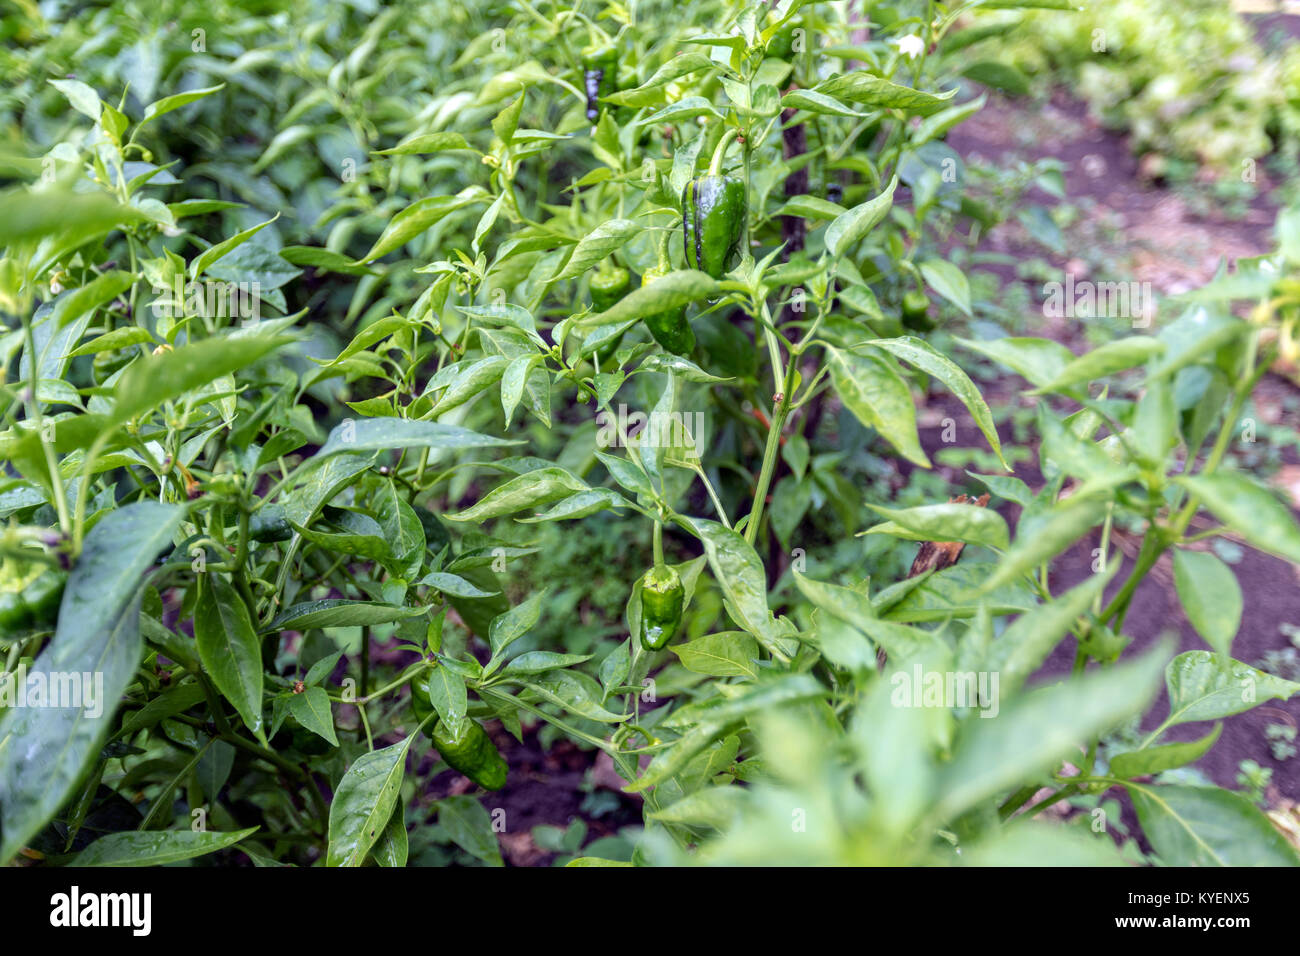 Pimientos de padron Pflanze, Capsicum annuum, in der Gemüse, padron  Paprika, Obstgarten in einem ländlichen Bauernhof in der Provinz Lugo,  Galizien, Spanien Stockfotografie - Alamy